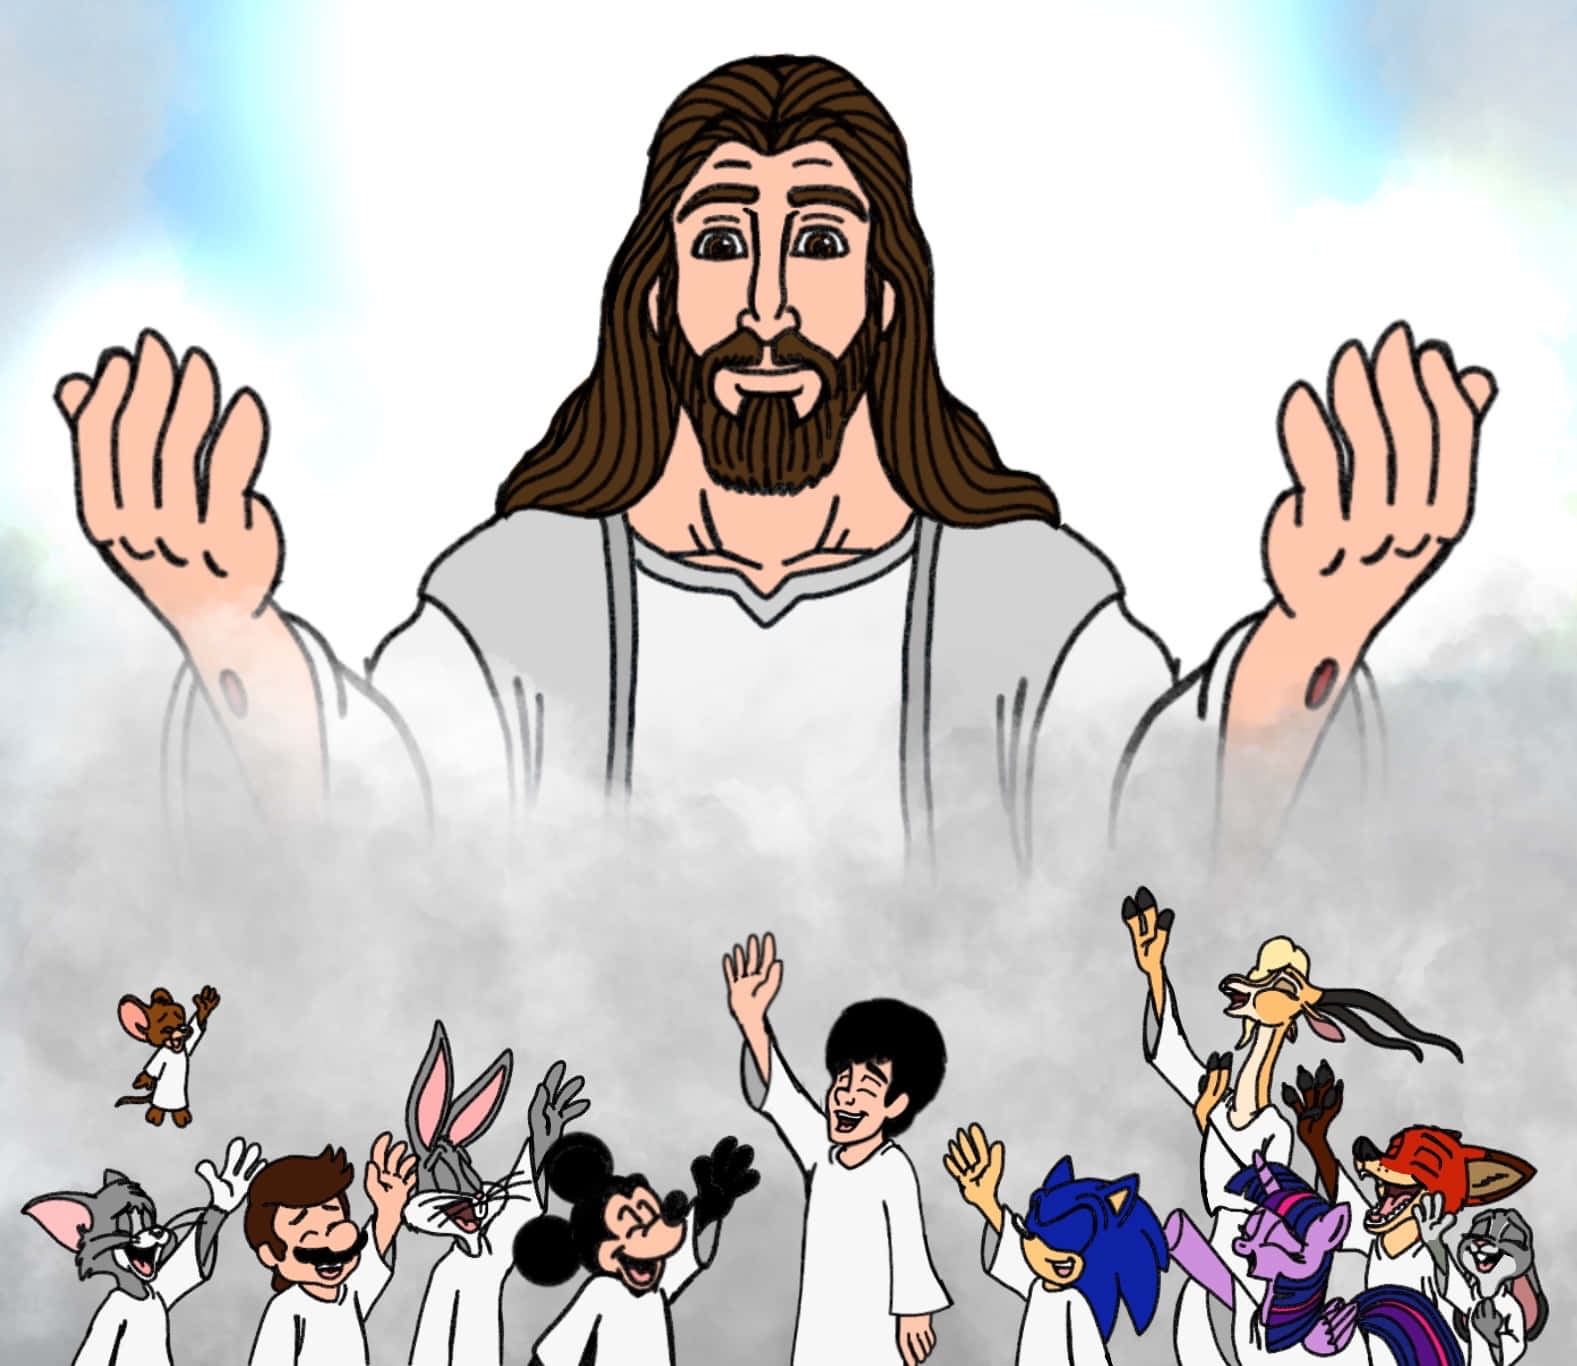 Immaginedel Cartone Animato Di Gesù Cristo